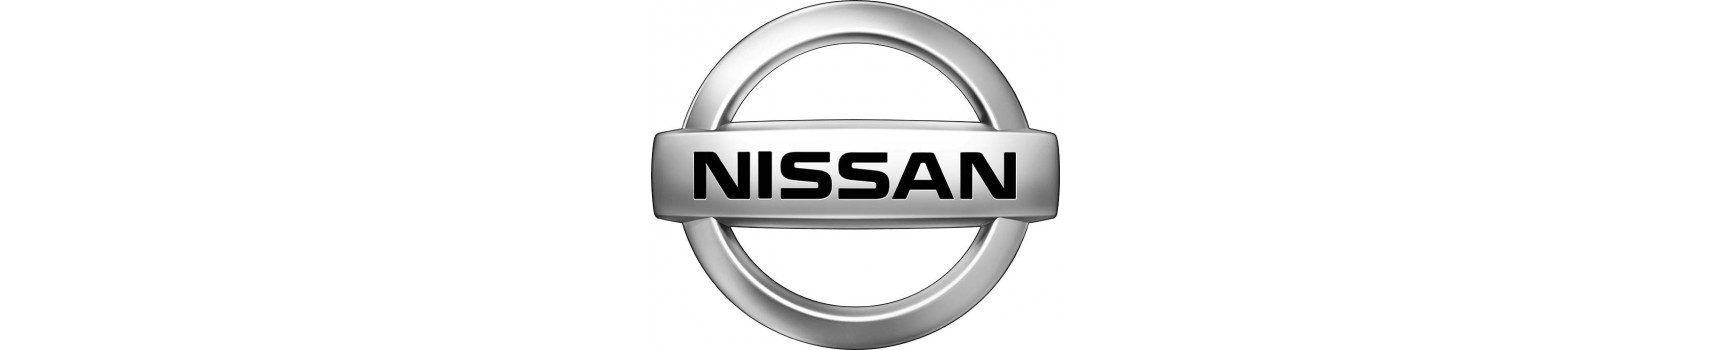 Nissana akcesoria off-road do, wyposażenie 4x4 Nissan